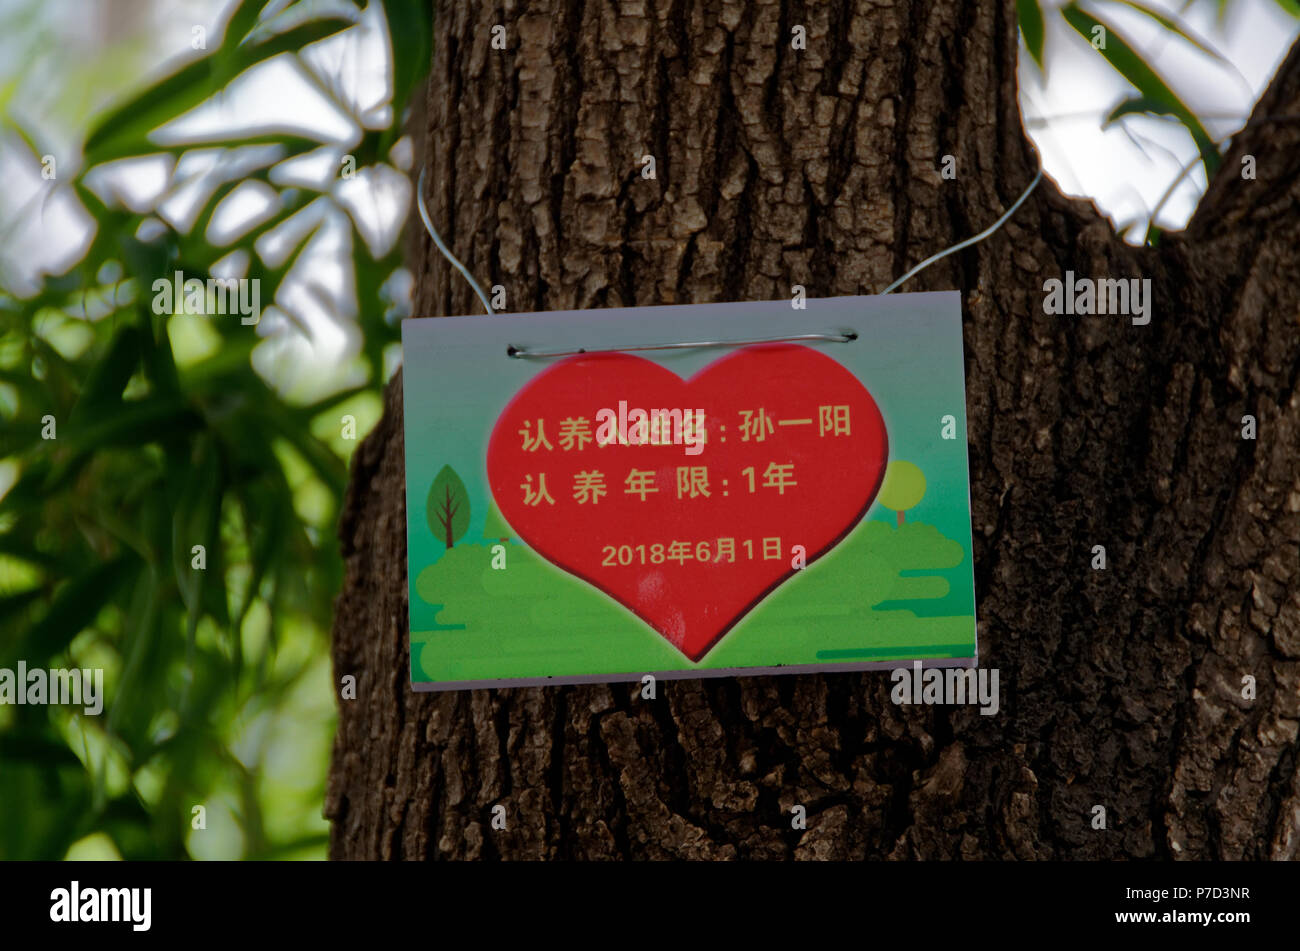 Aimer la nature - signe montrant un arbre a été adopté pour une année au parc Liangmaqiao Road 40, Beijing, Chine Banque D'Images